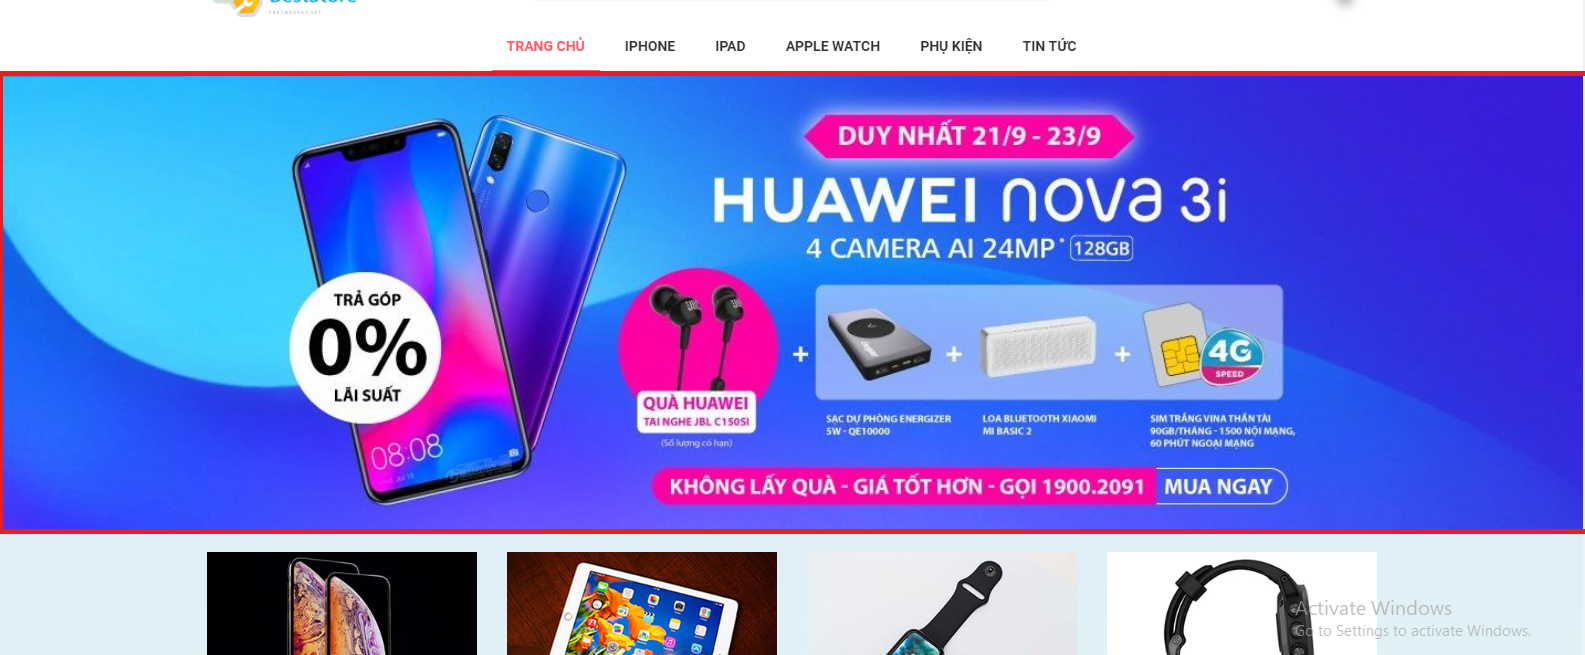 Thay đổi font chữ cho Huawei Nova 3i đã trở nên dễ dàng hơn bao giờ hết trong năm